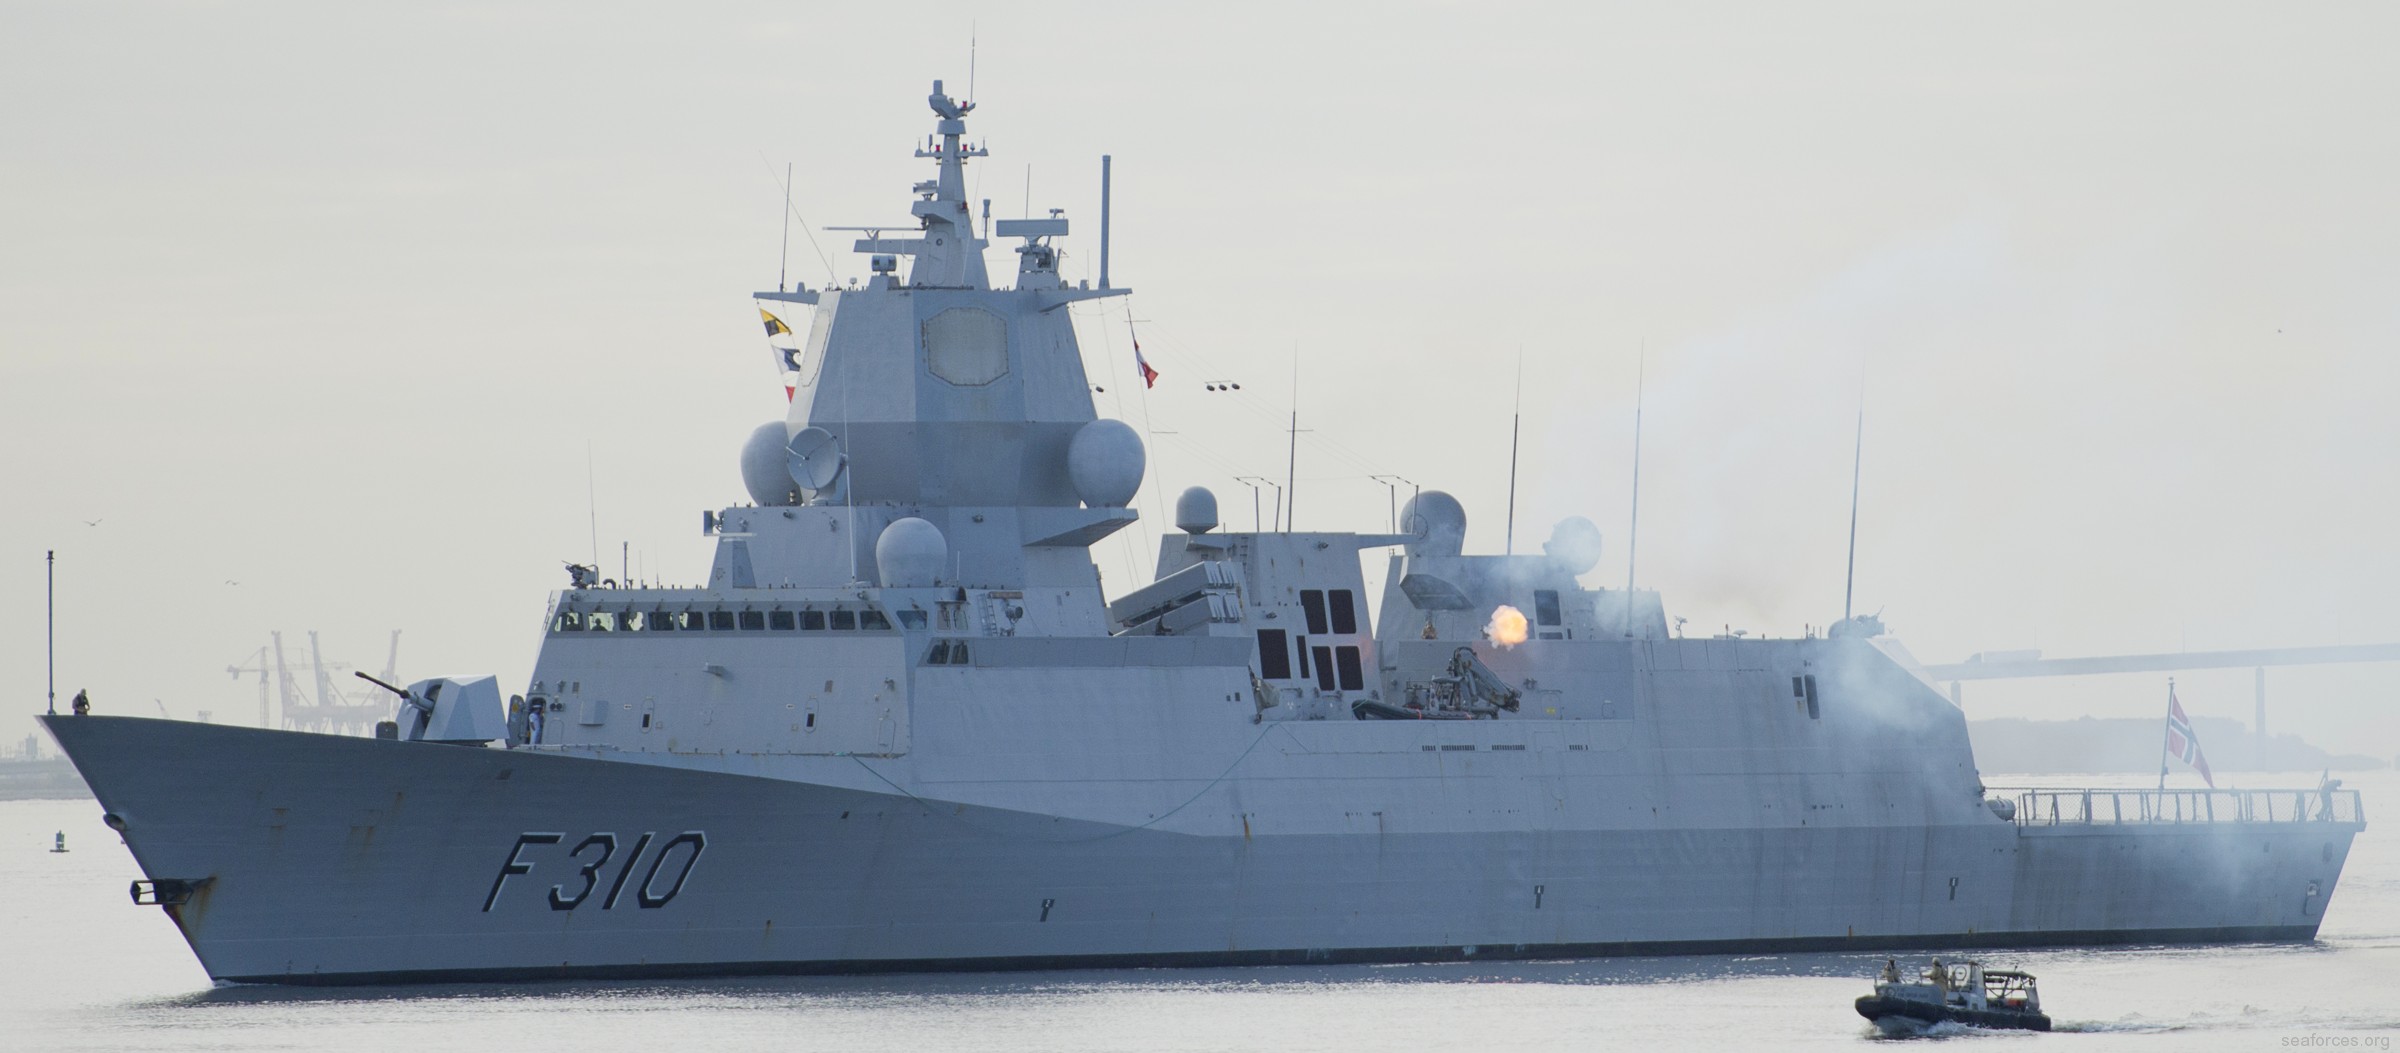 f-310 fridtjof nansen hnoms knm frigate royal norwegian navy sjoforsvaret 29